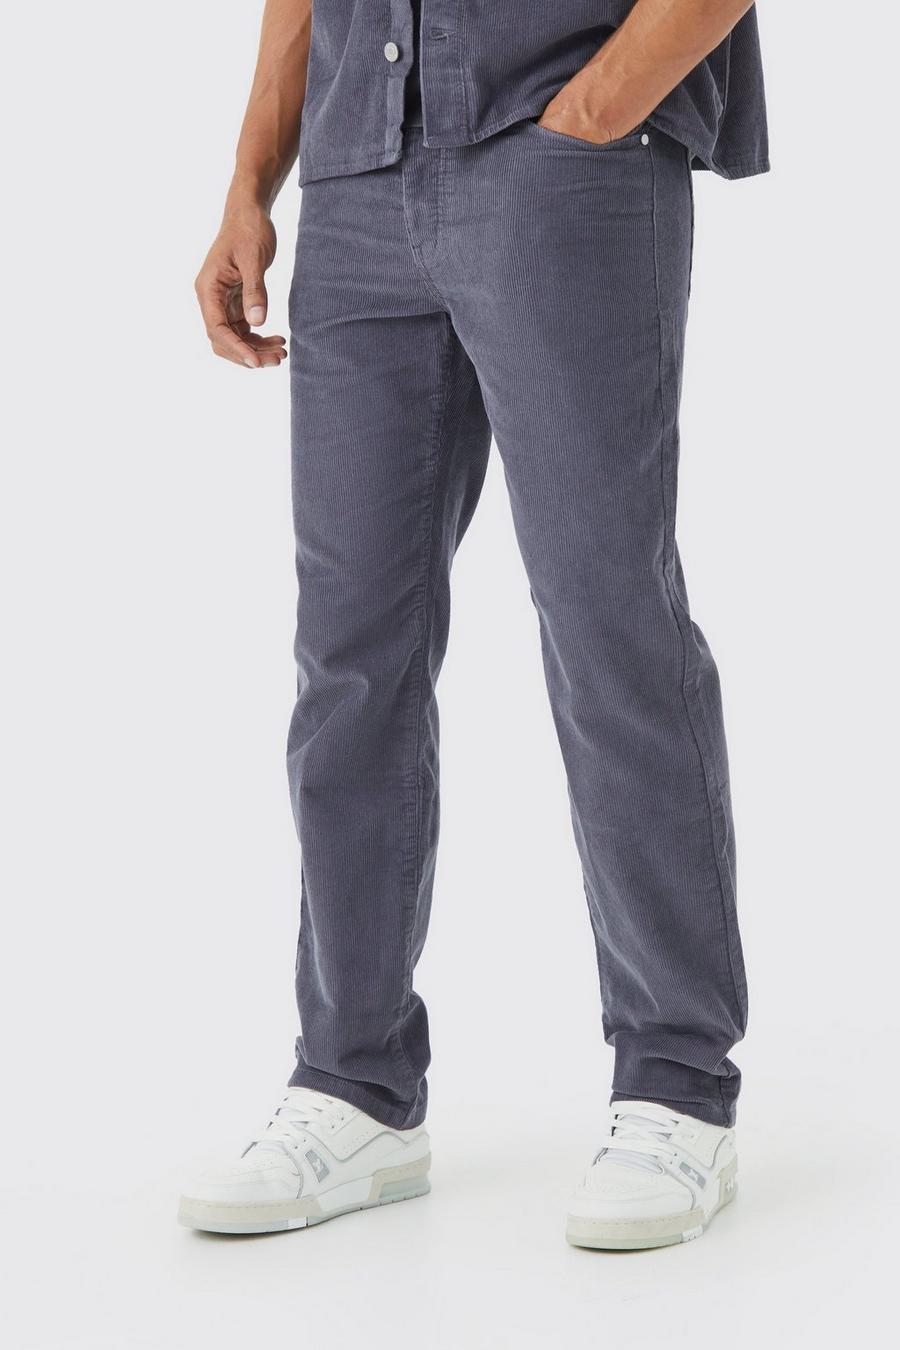 Pantaloni rilassati in velluto a coste con vita fissa, Charcoal gris